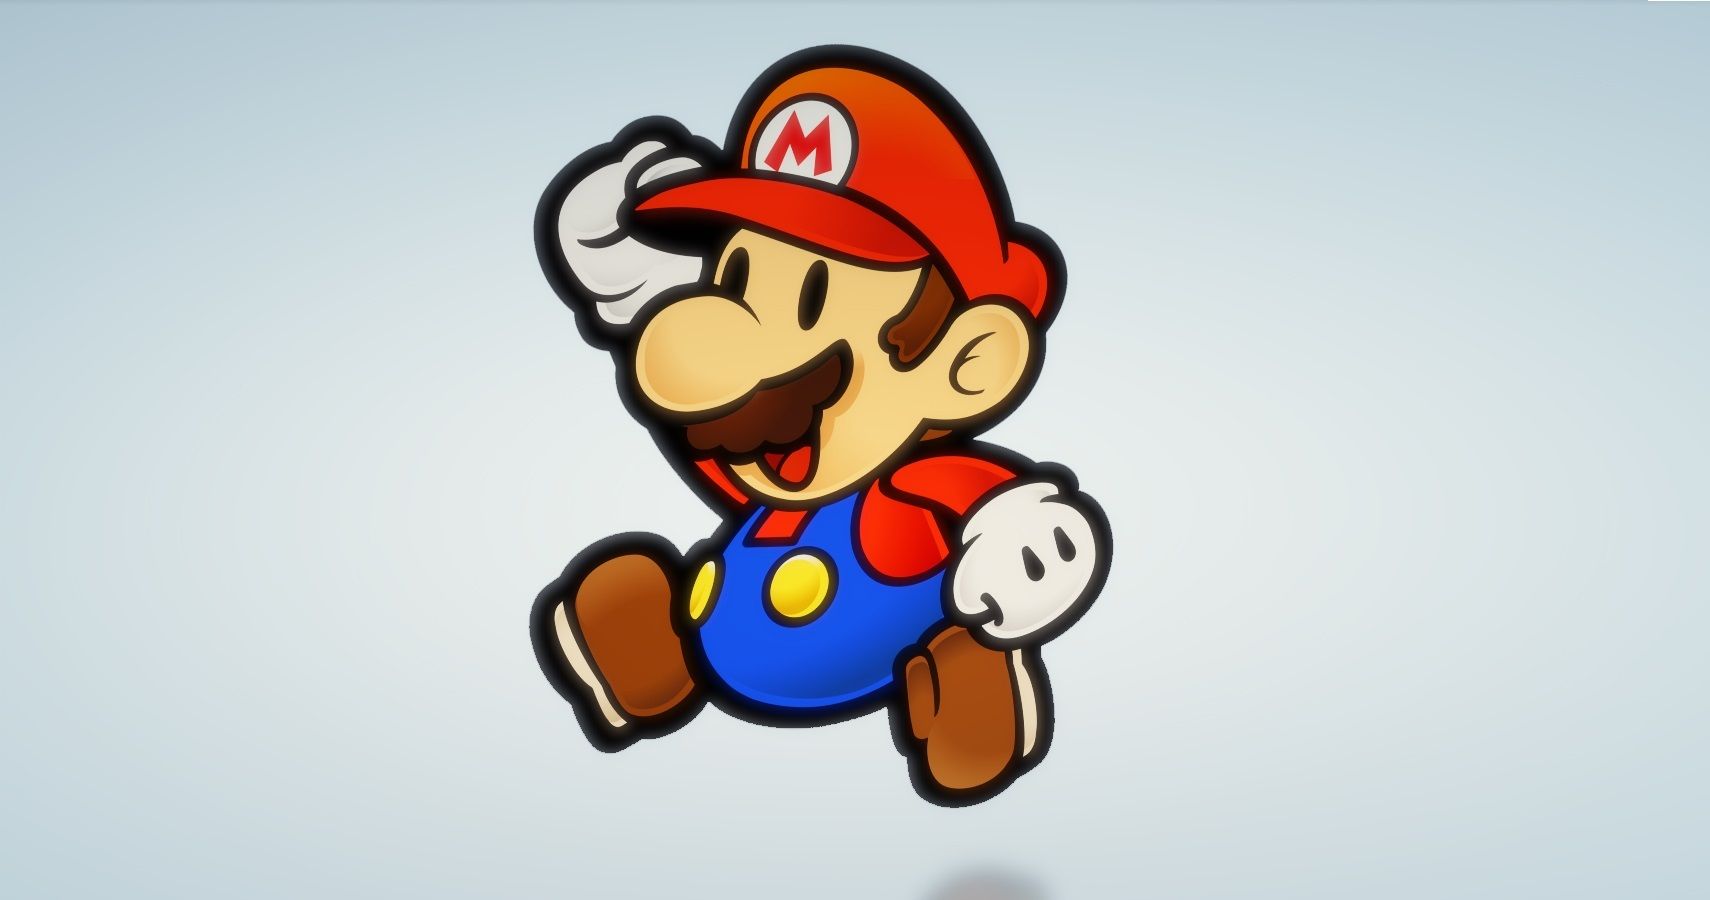 Rumor: Brand New Paper Mario Coming This Year | TheGamer